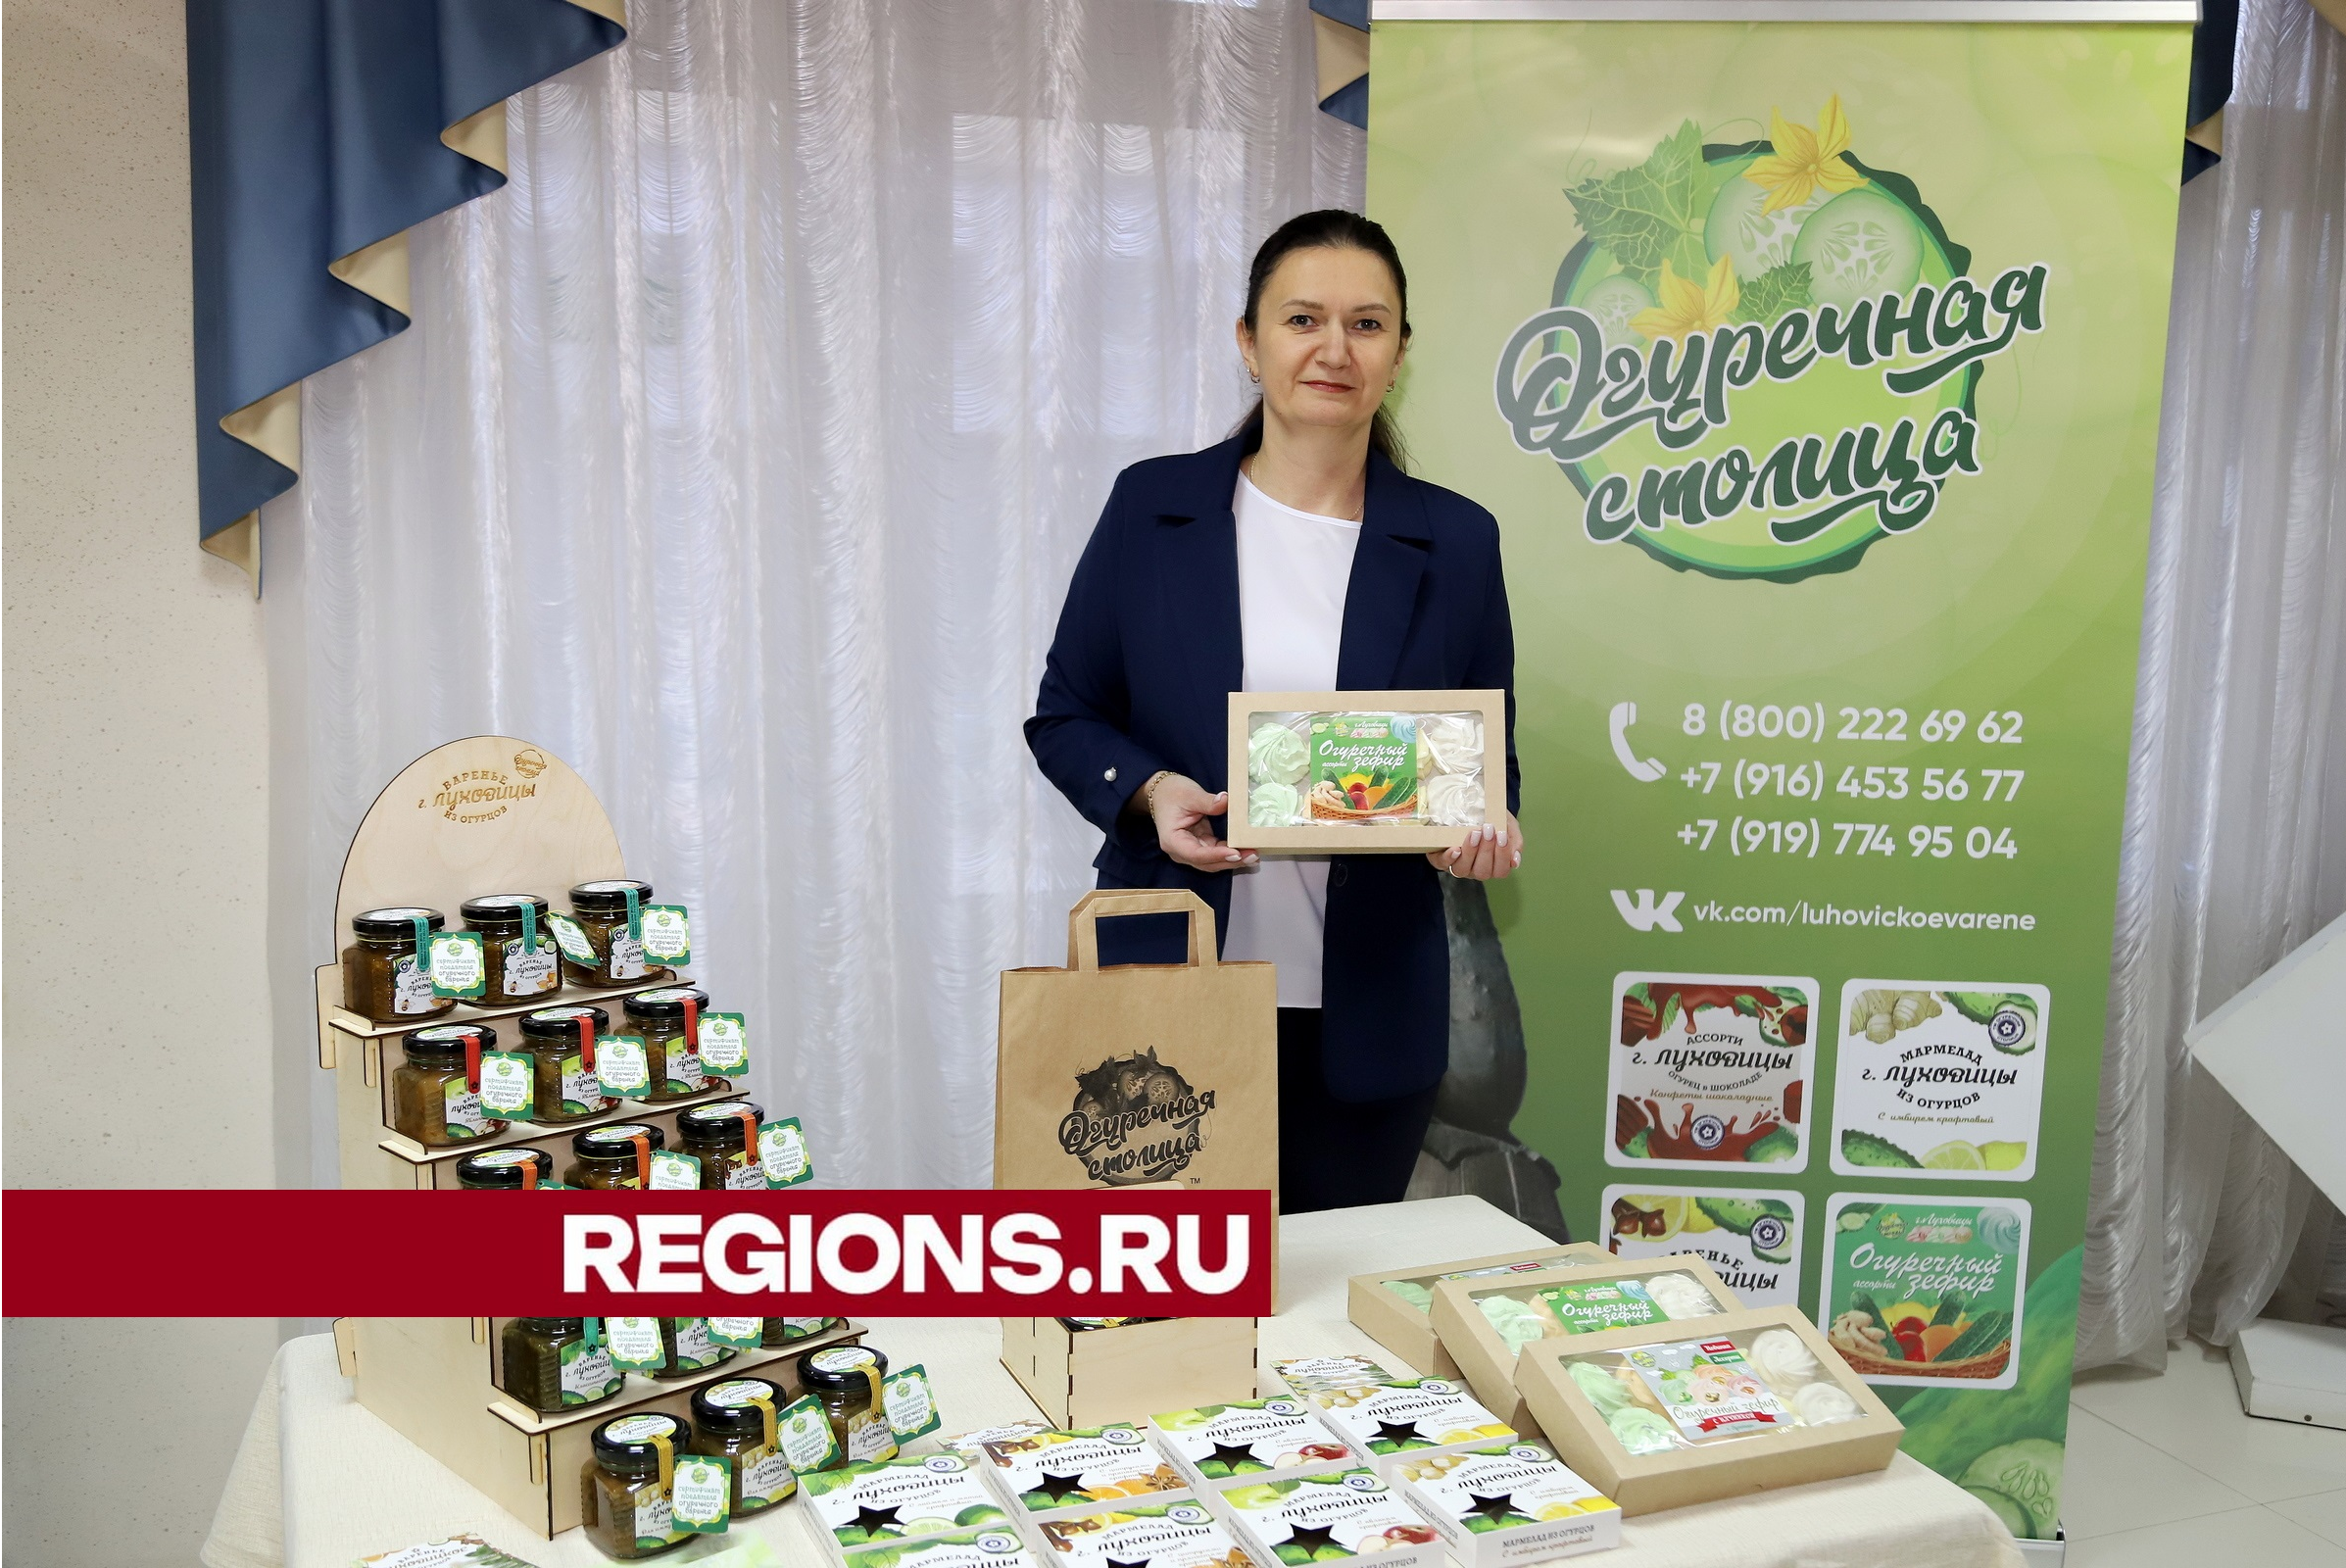 Луховичане угостили участников федерального форума вареньем из огурцов и сыром